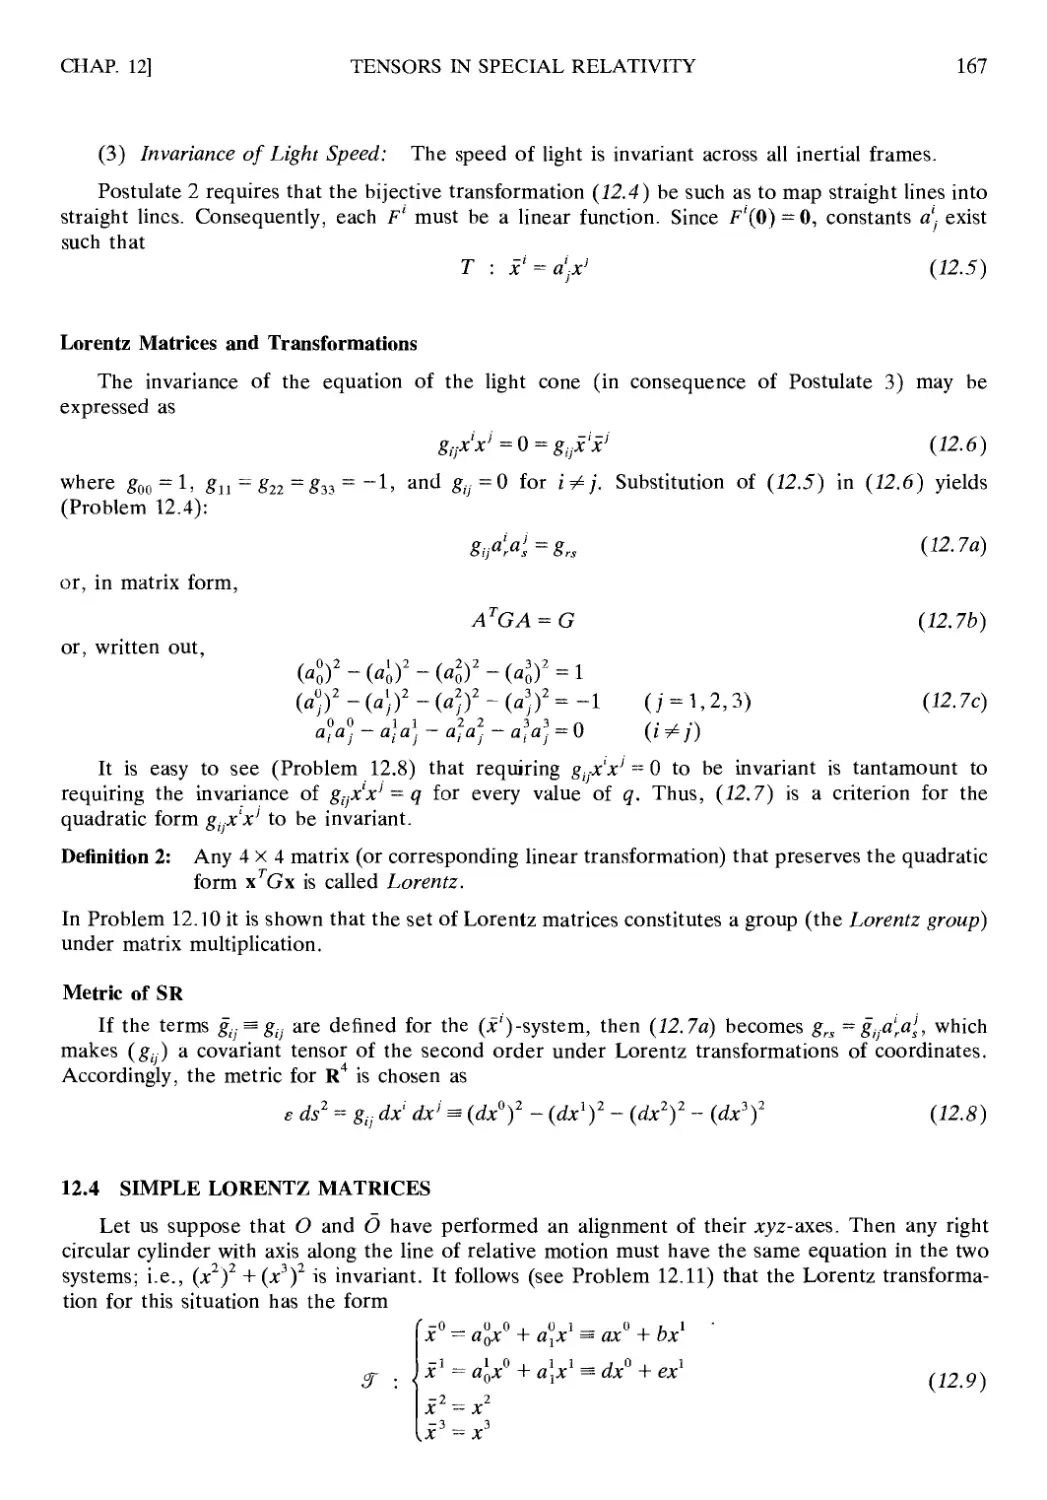 12.4 Simple Lorentz Matrices